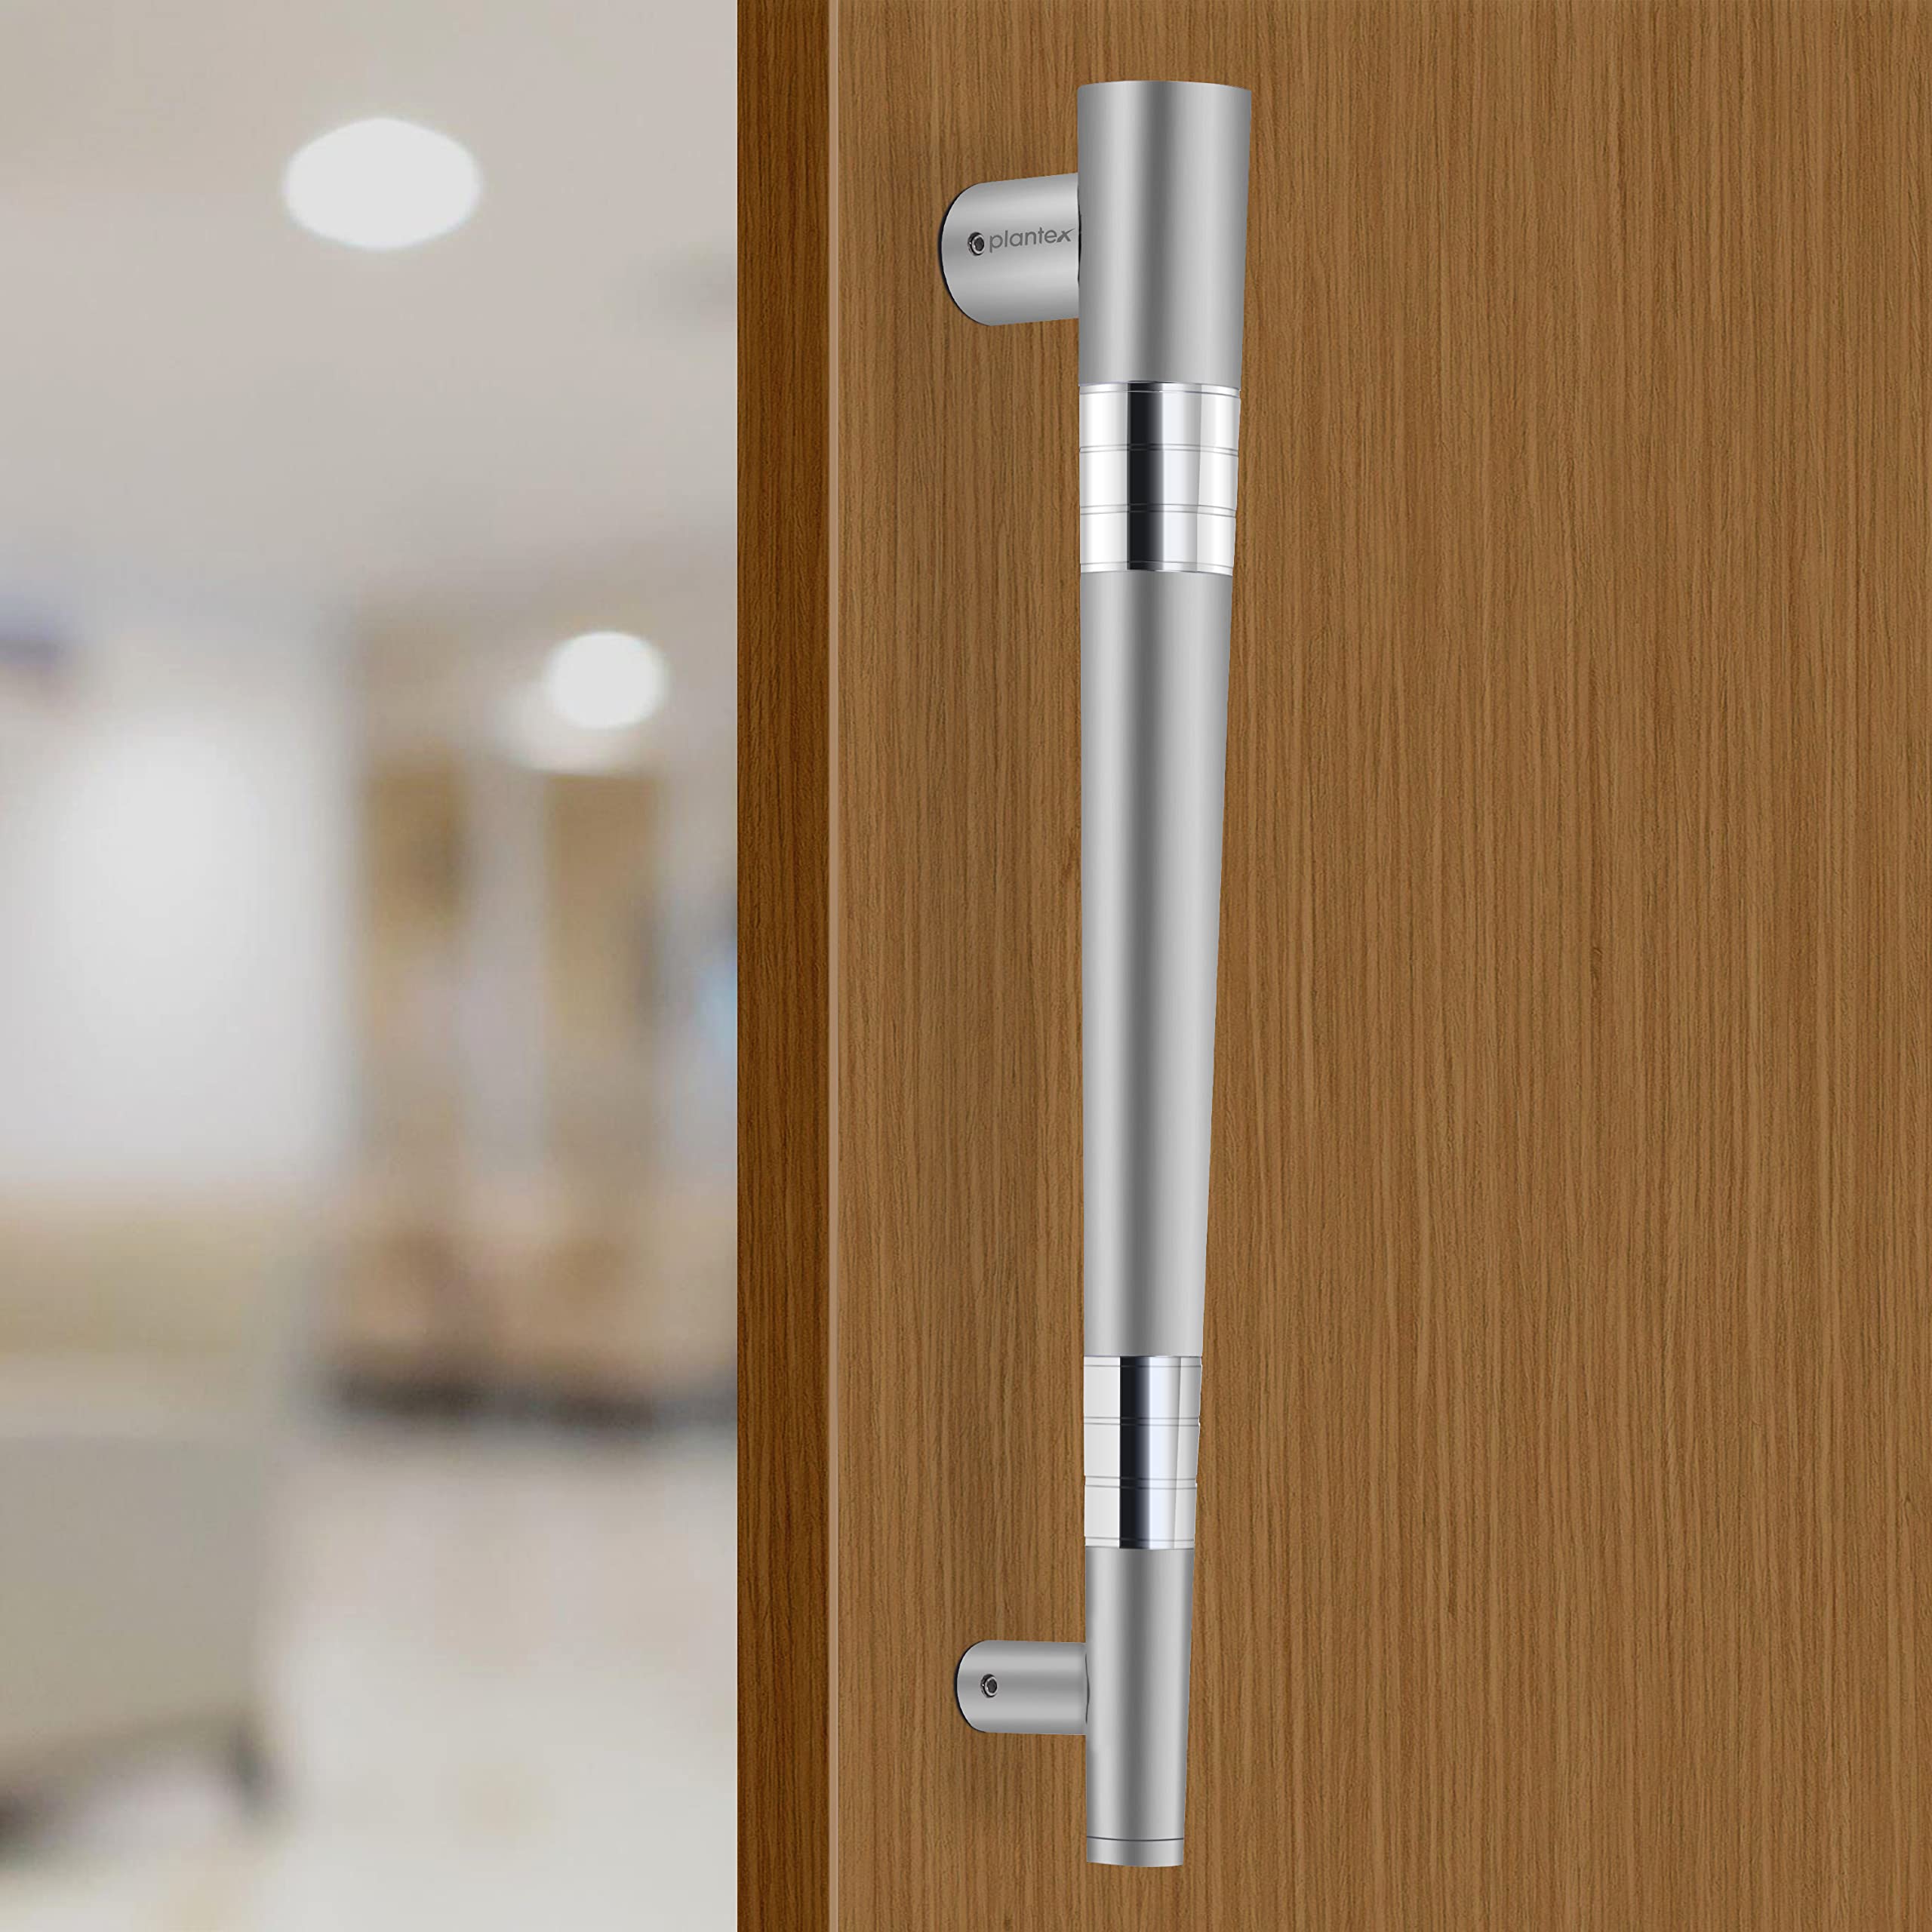 Plantex Door Handle/Door & Home Decor/14 Inch Main Door Handle/Door Pull Push Handle – Pack of 1 (306, Satin Finish)